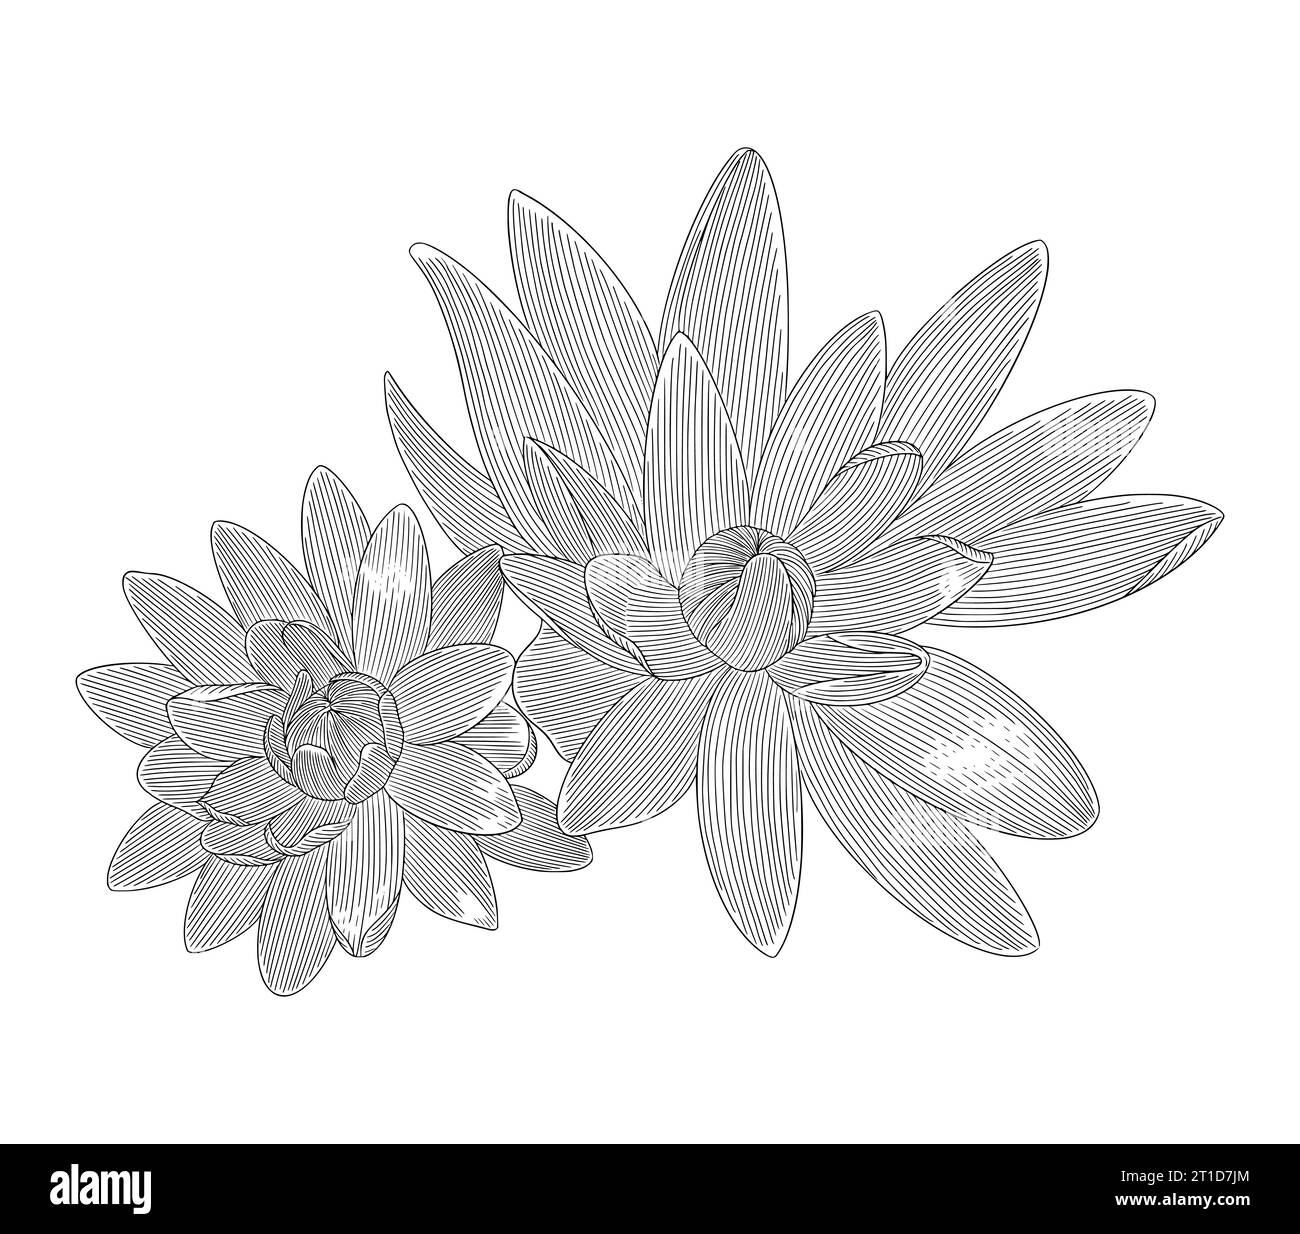 : Fleurs de Lily Lotus, gravure vintage dessin style illustration vectorielle Illustration de Vecteur